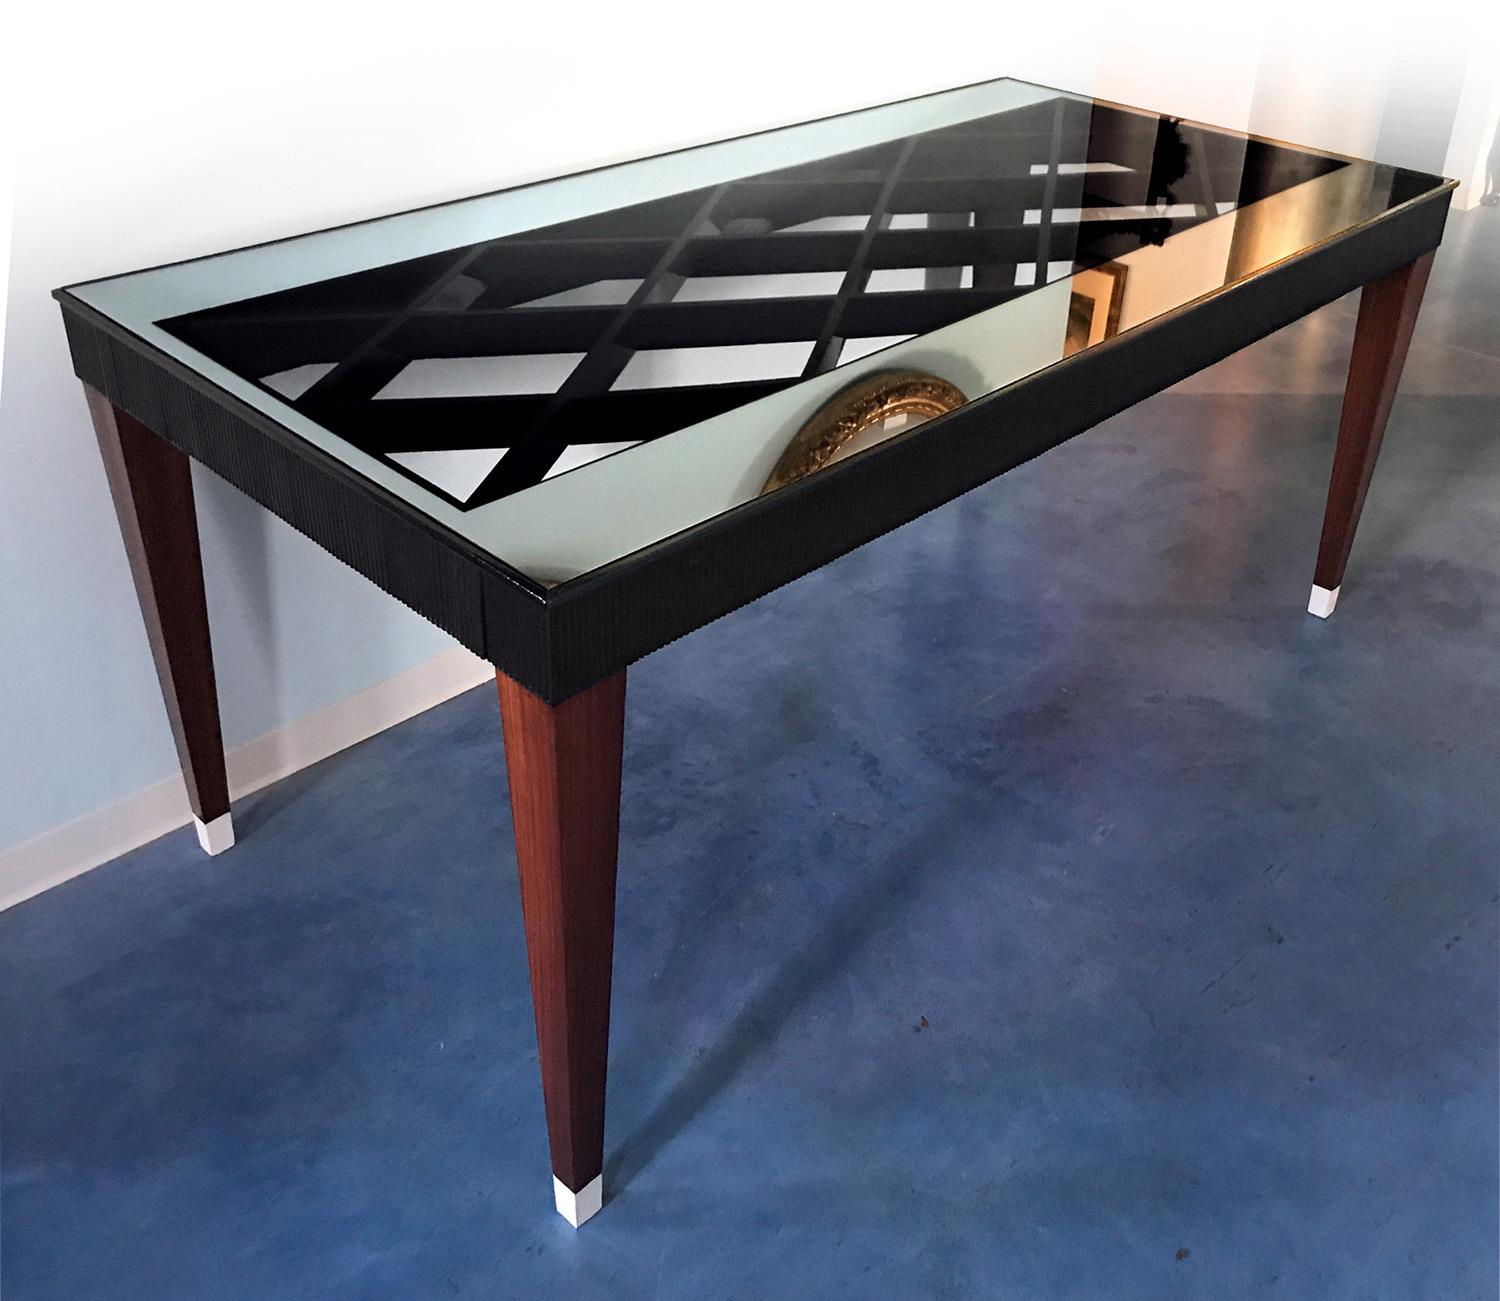 Le design de cette merveilleuse table de salle à manger est attribué à Paolo Buffa dans les années 1950.
Il présente un design sculpté unique, très élégant et charmant, caractérisé par une structure aux formes géométriques en bois noir laqué, avec